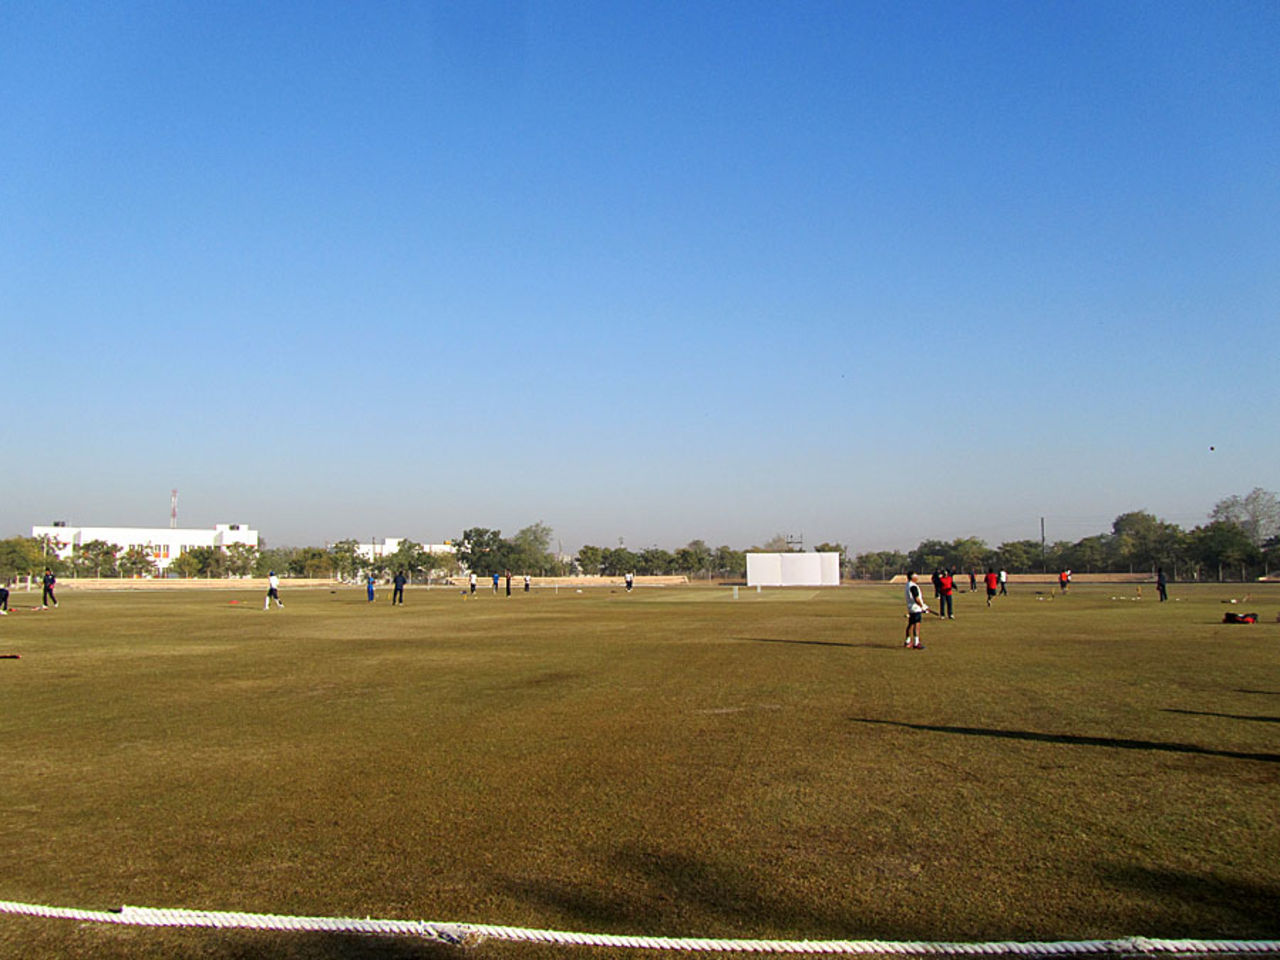 Saurashtra University Ground, January 7, 2013